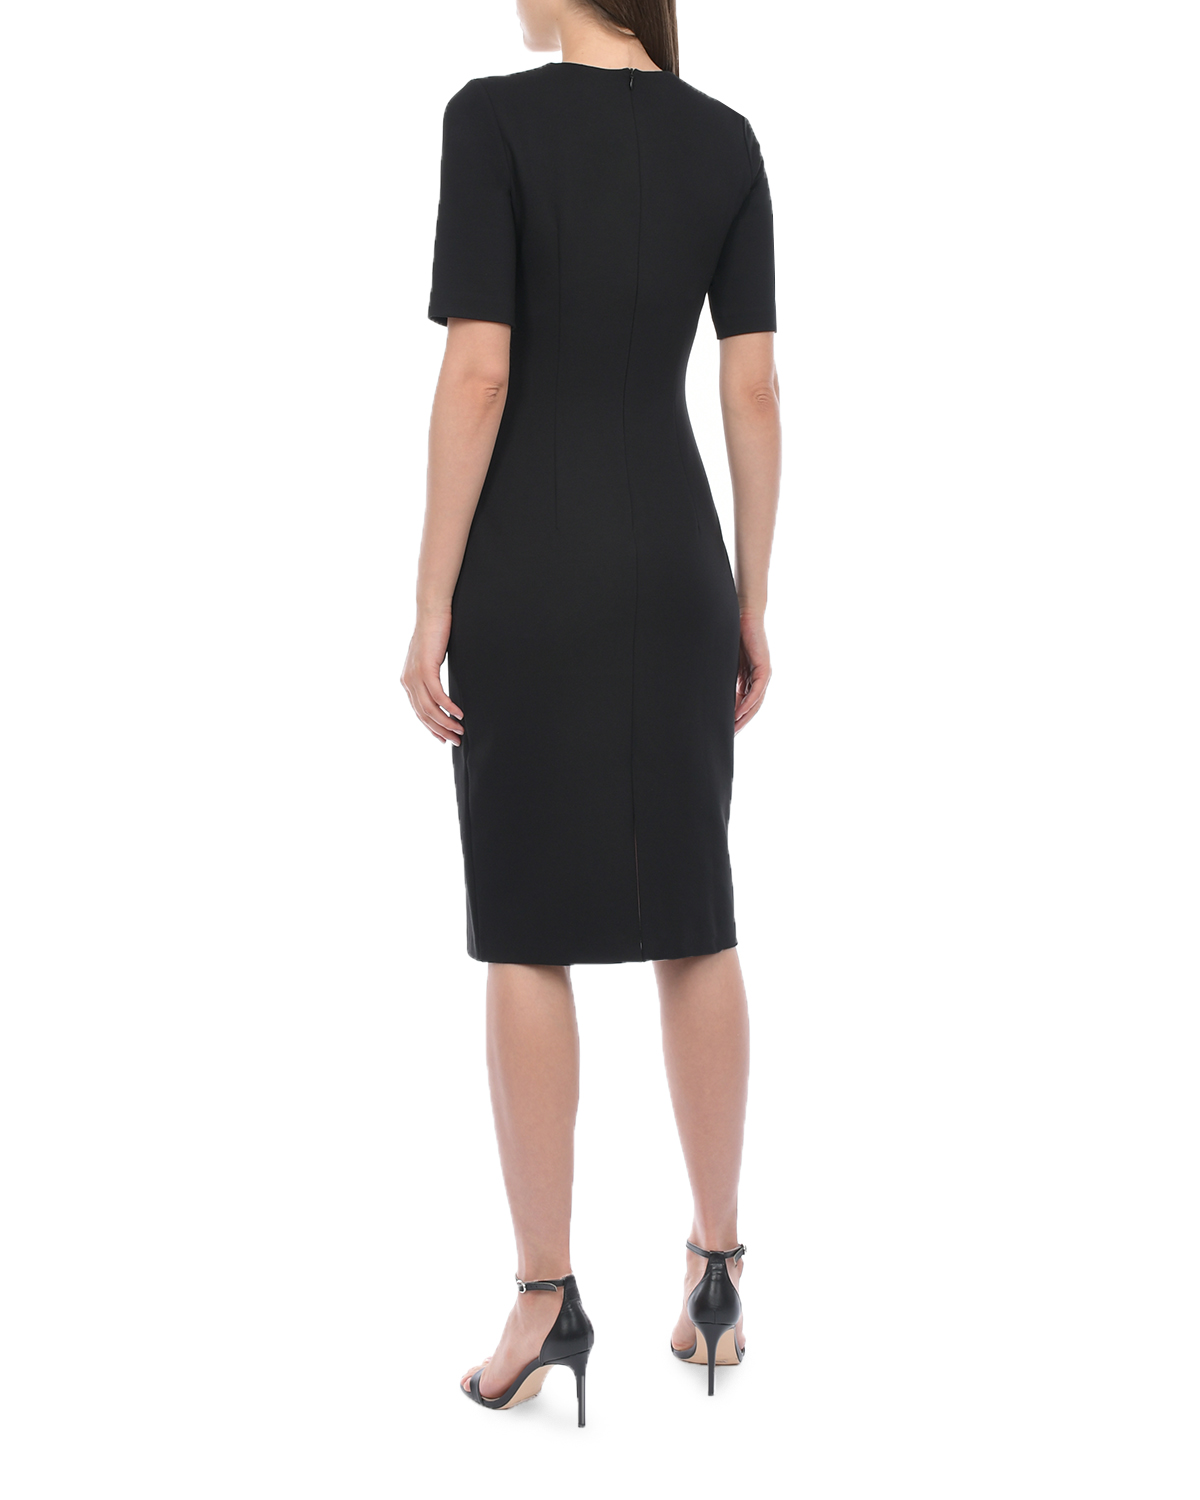 Трикотажное черное платье-футляр Dan Maralex, размер 42, цвет черный - фото 3